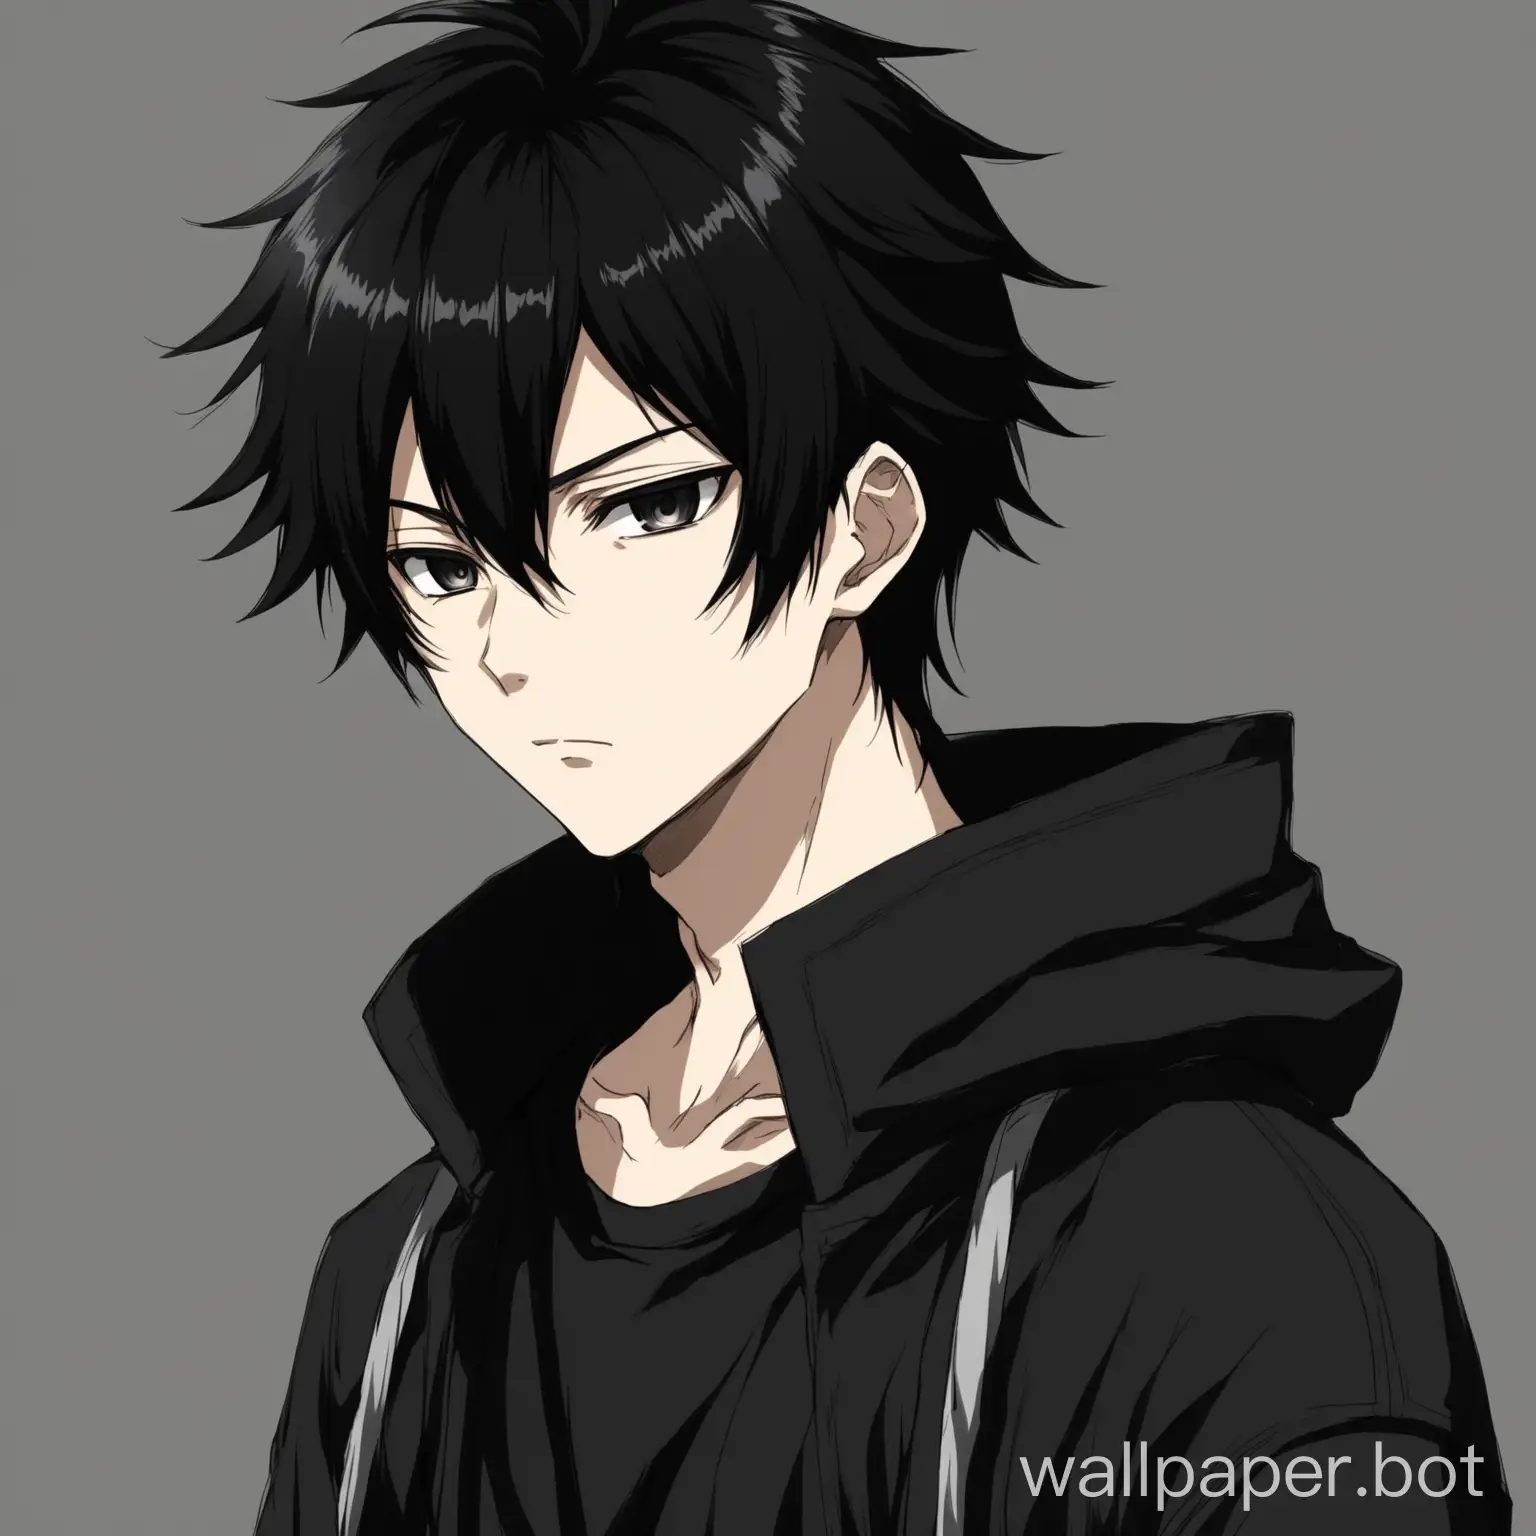 Mysterious-Anime-Boy-with-Black-Hair